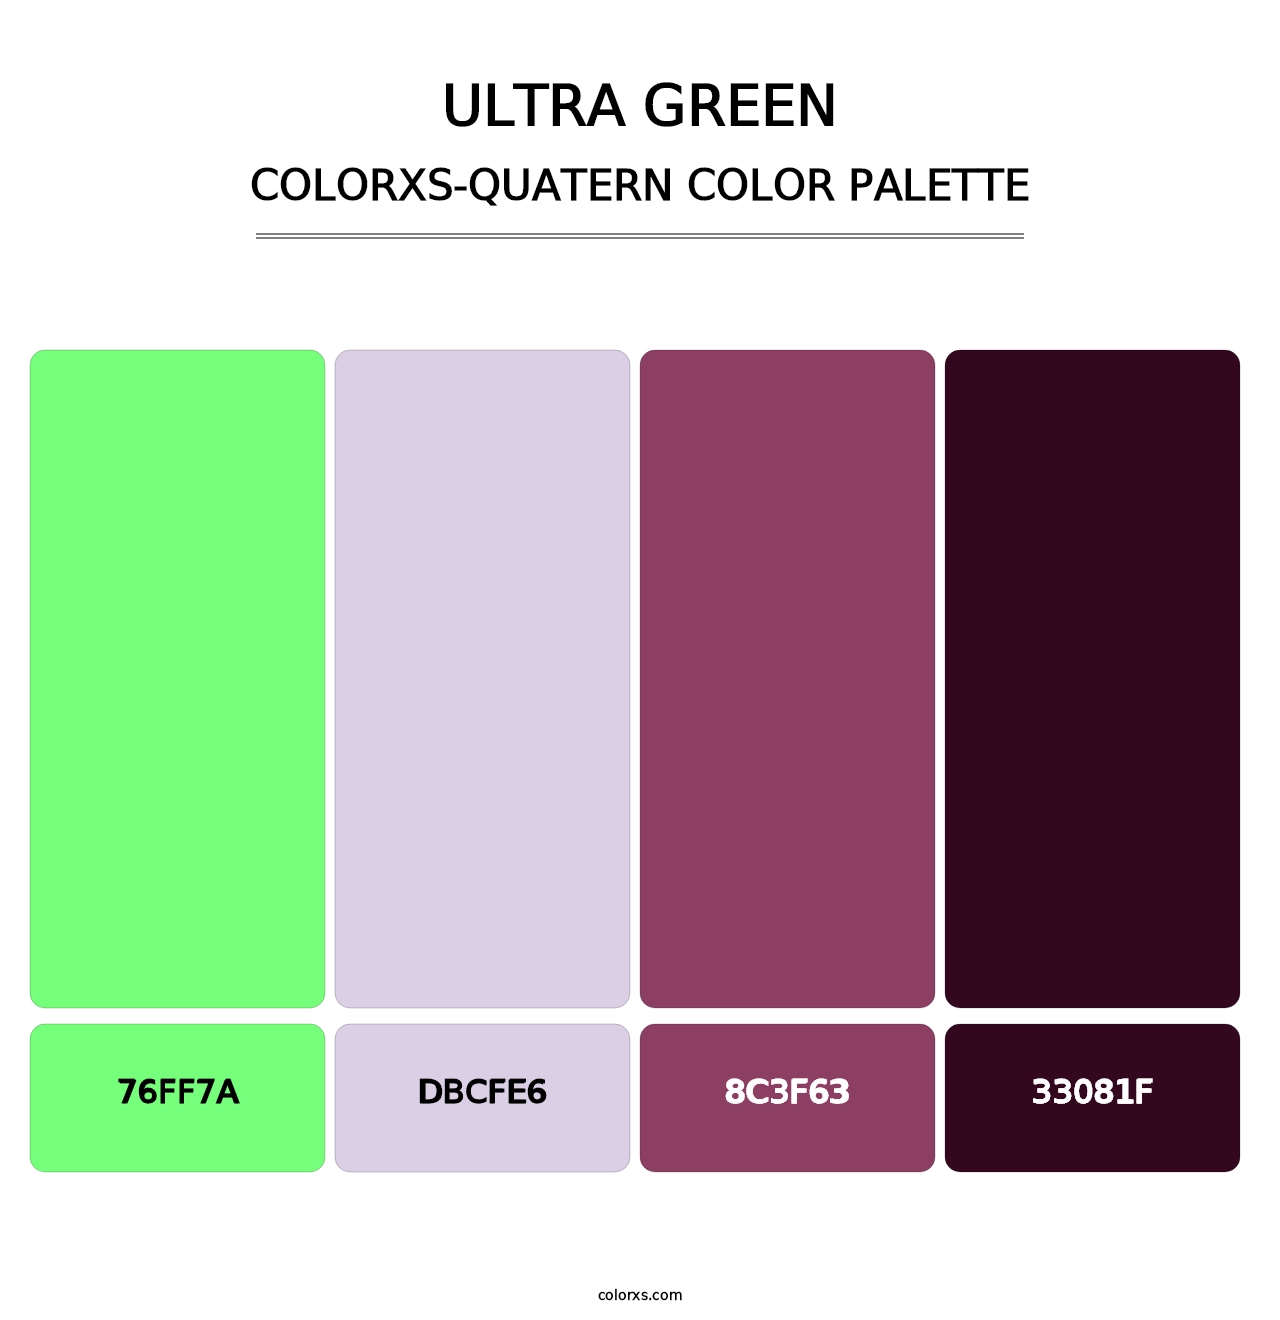 Ultra Green - Colorxs Quatern Palette